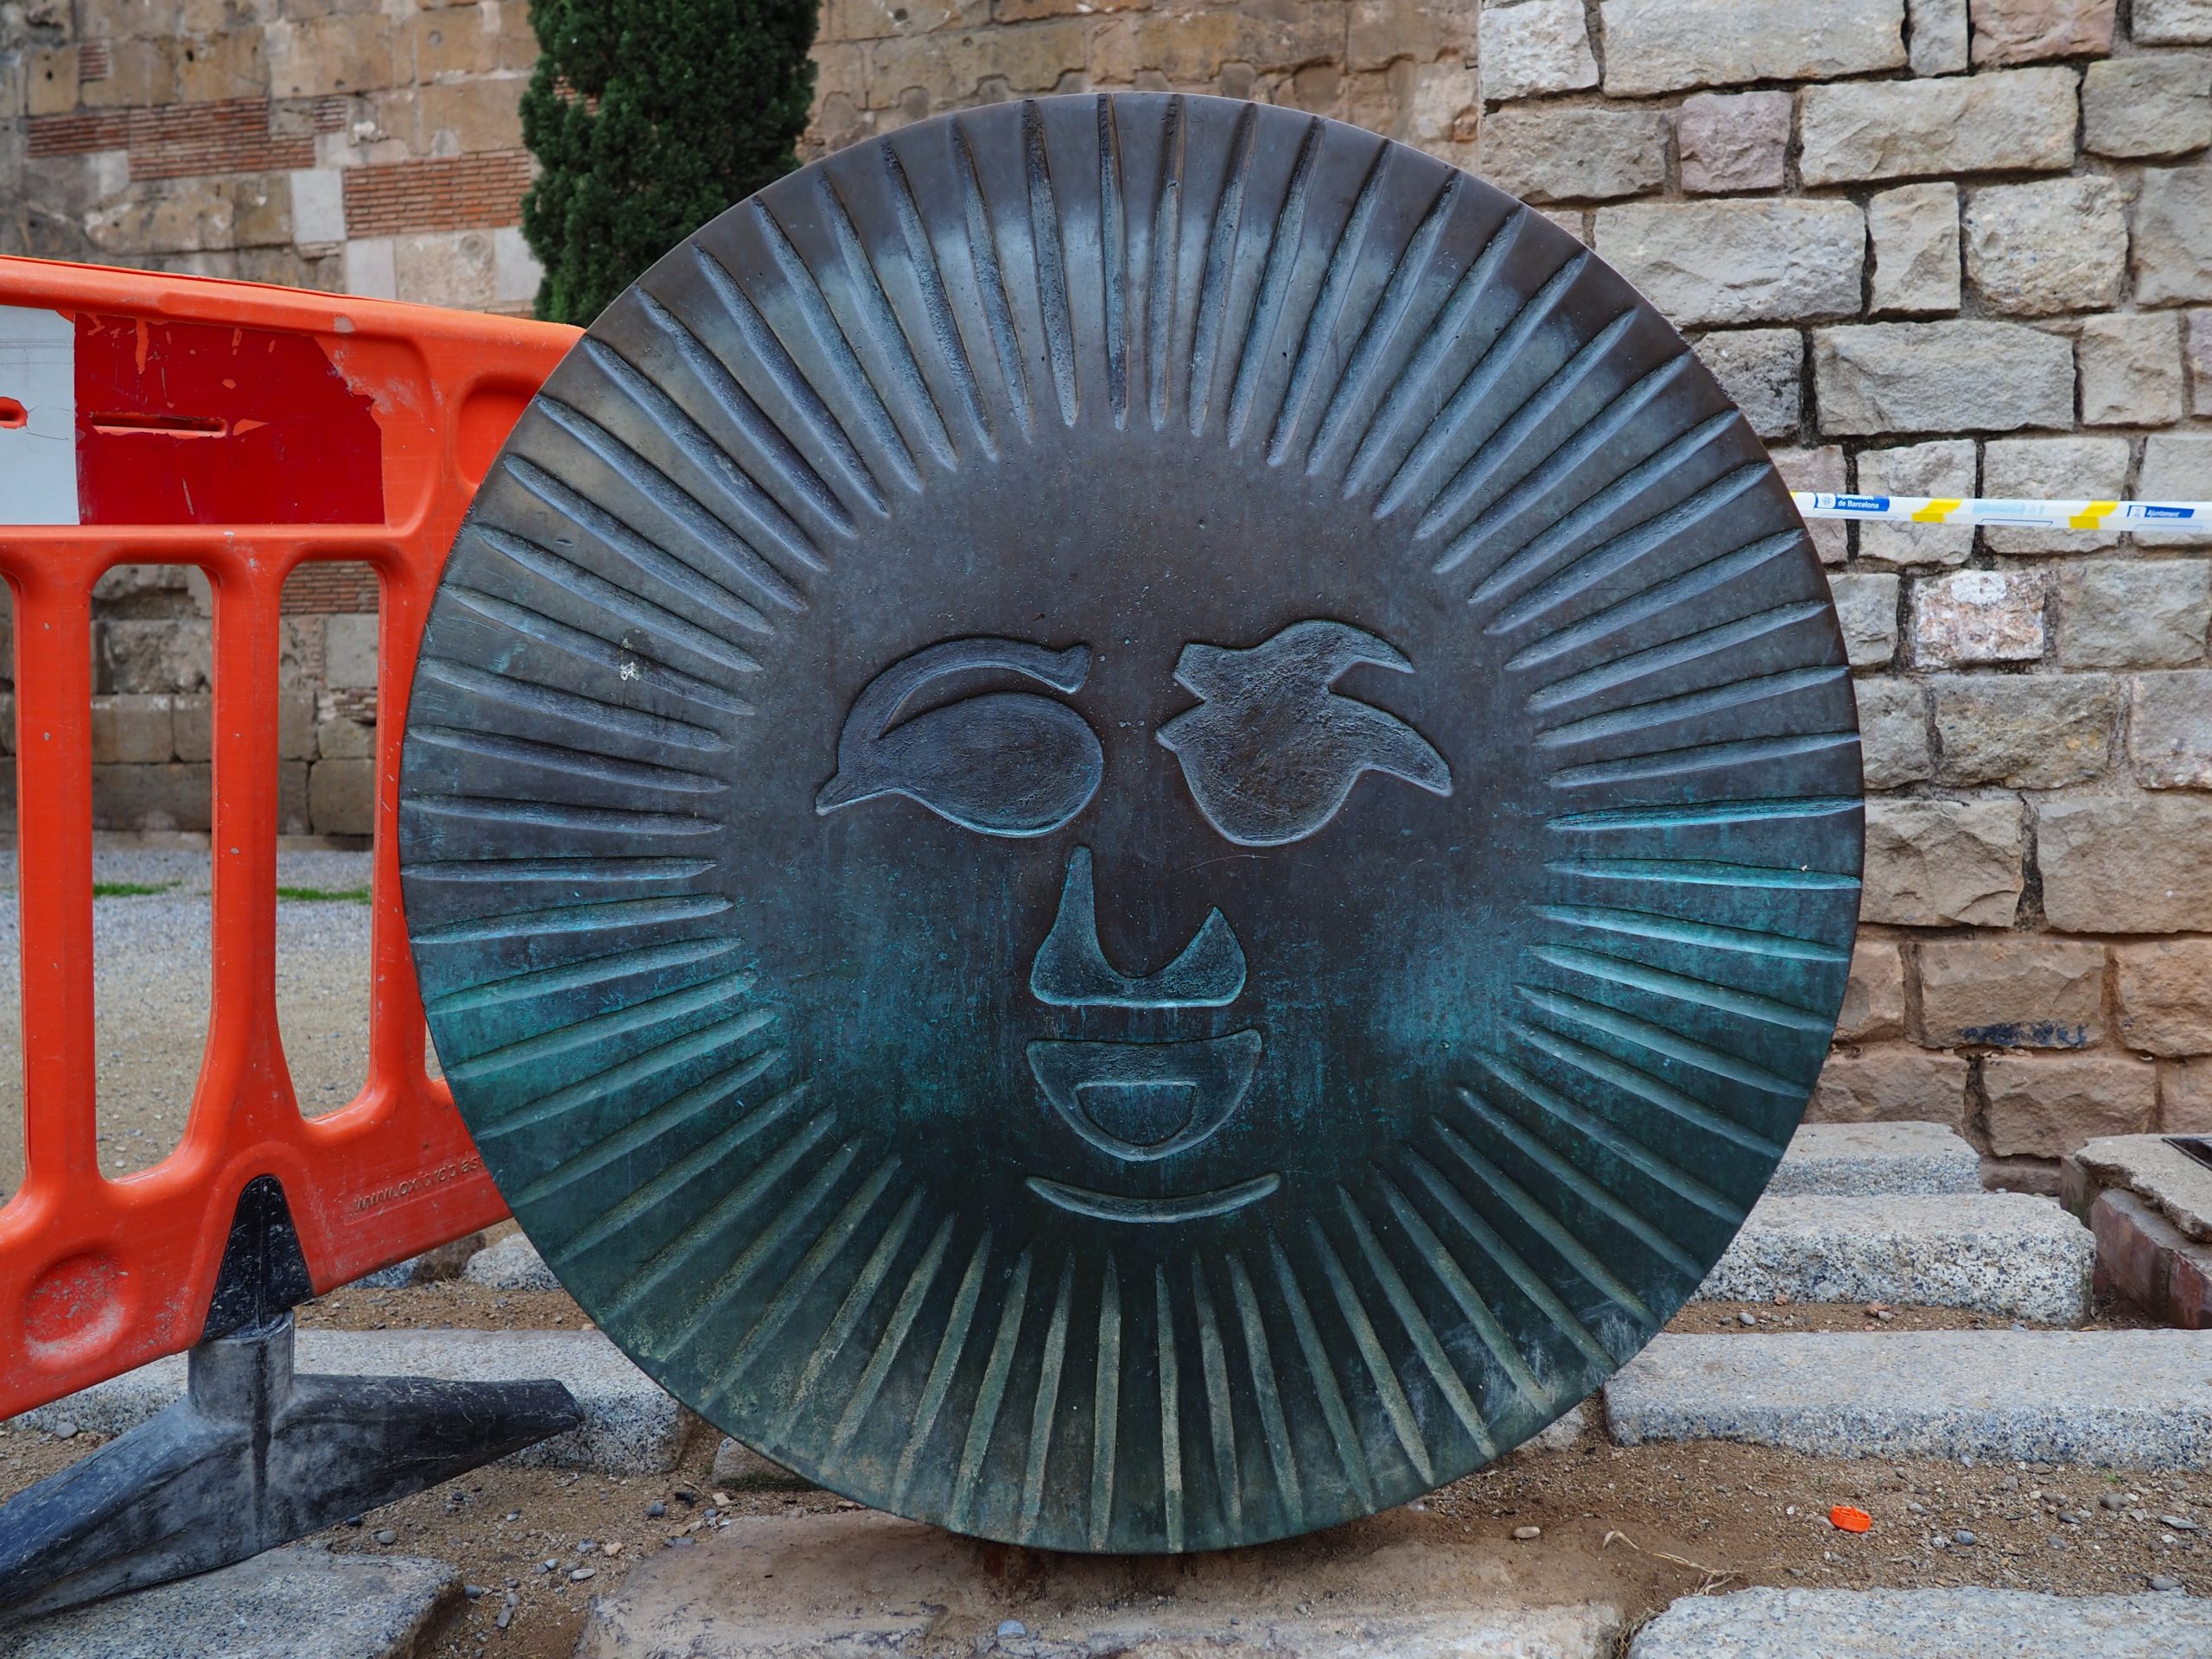 Une sculpture solaire sur fer, la lettre O sur la sculpture Barcino. Chasse au trésor à Barcelone. Quartier gothique.